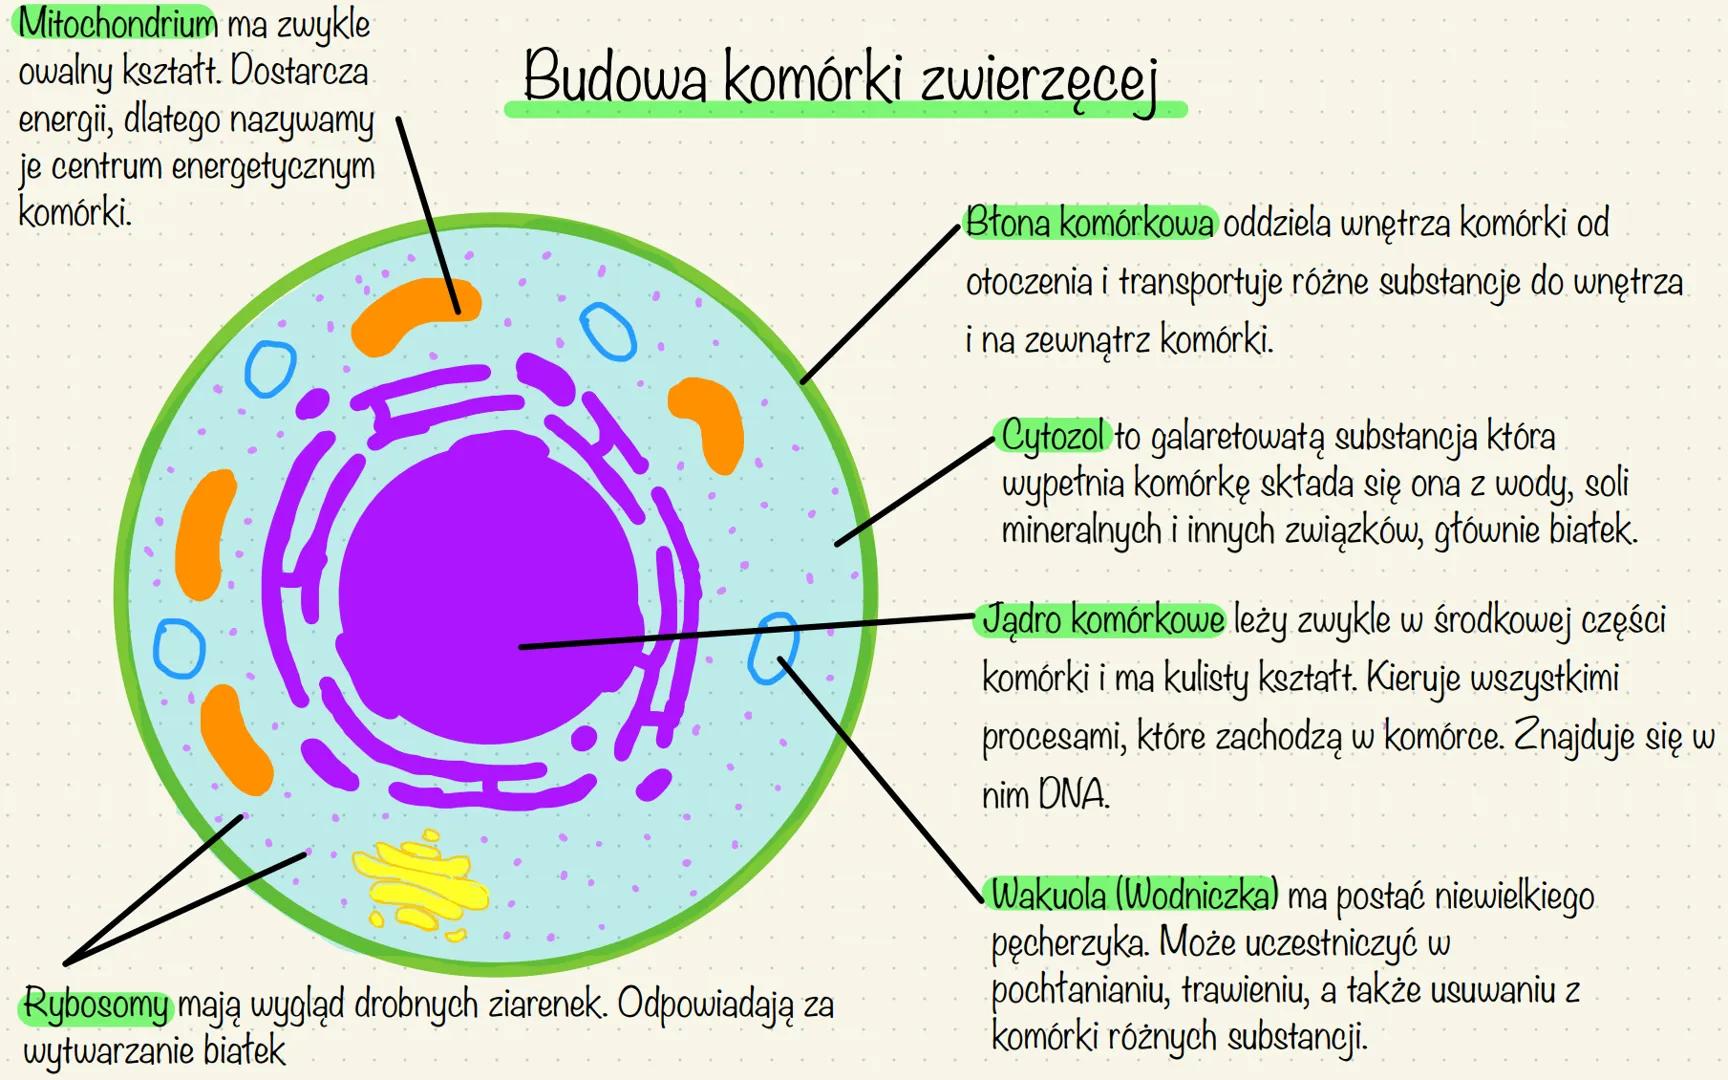 Mitochondrium ma zwykle
owalny kształt. Dostarcza.
energii, dlatego nazywamy
je centrum energetycznym
komórki.
Budowa komórki zwierzęcej
Ryb